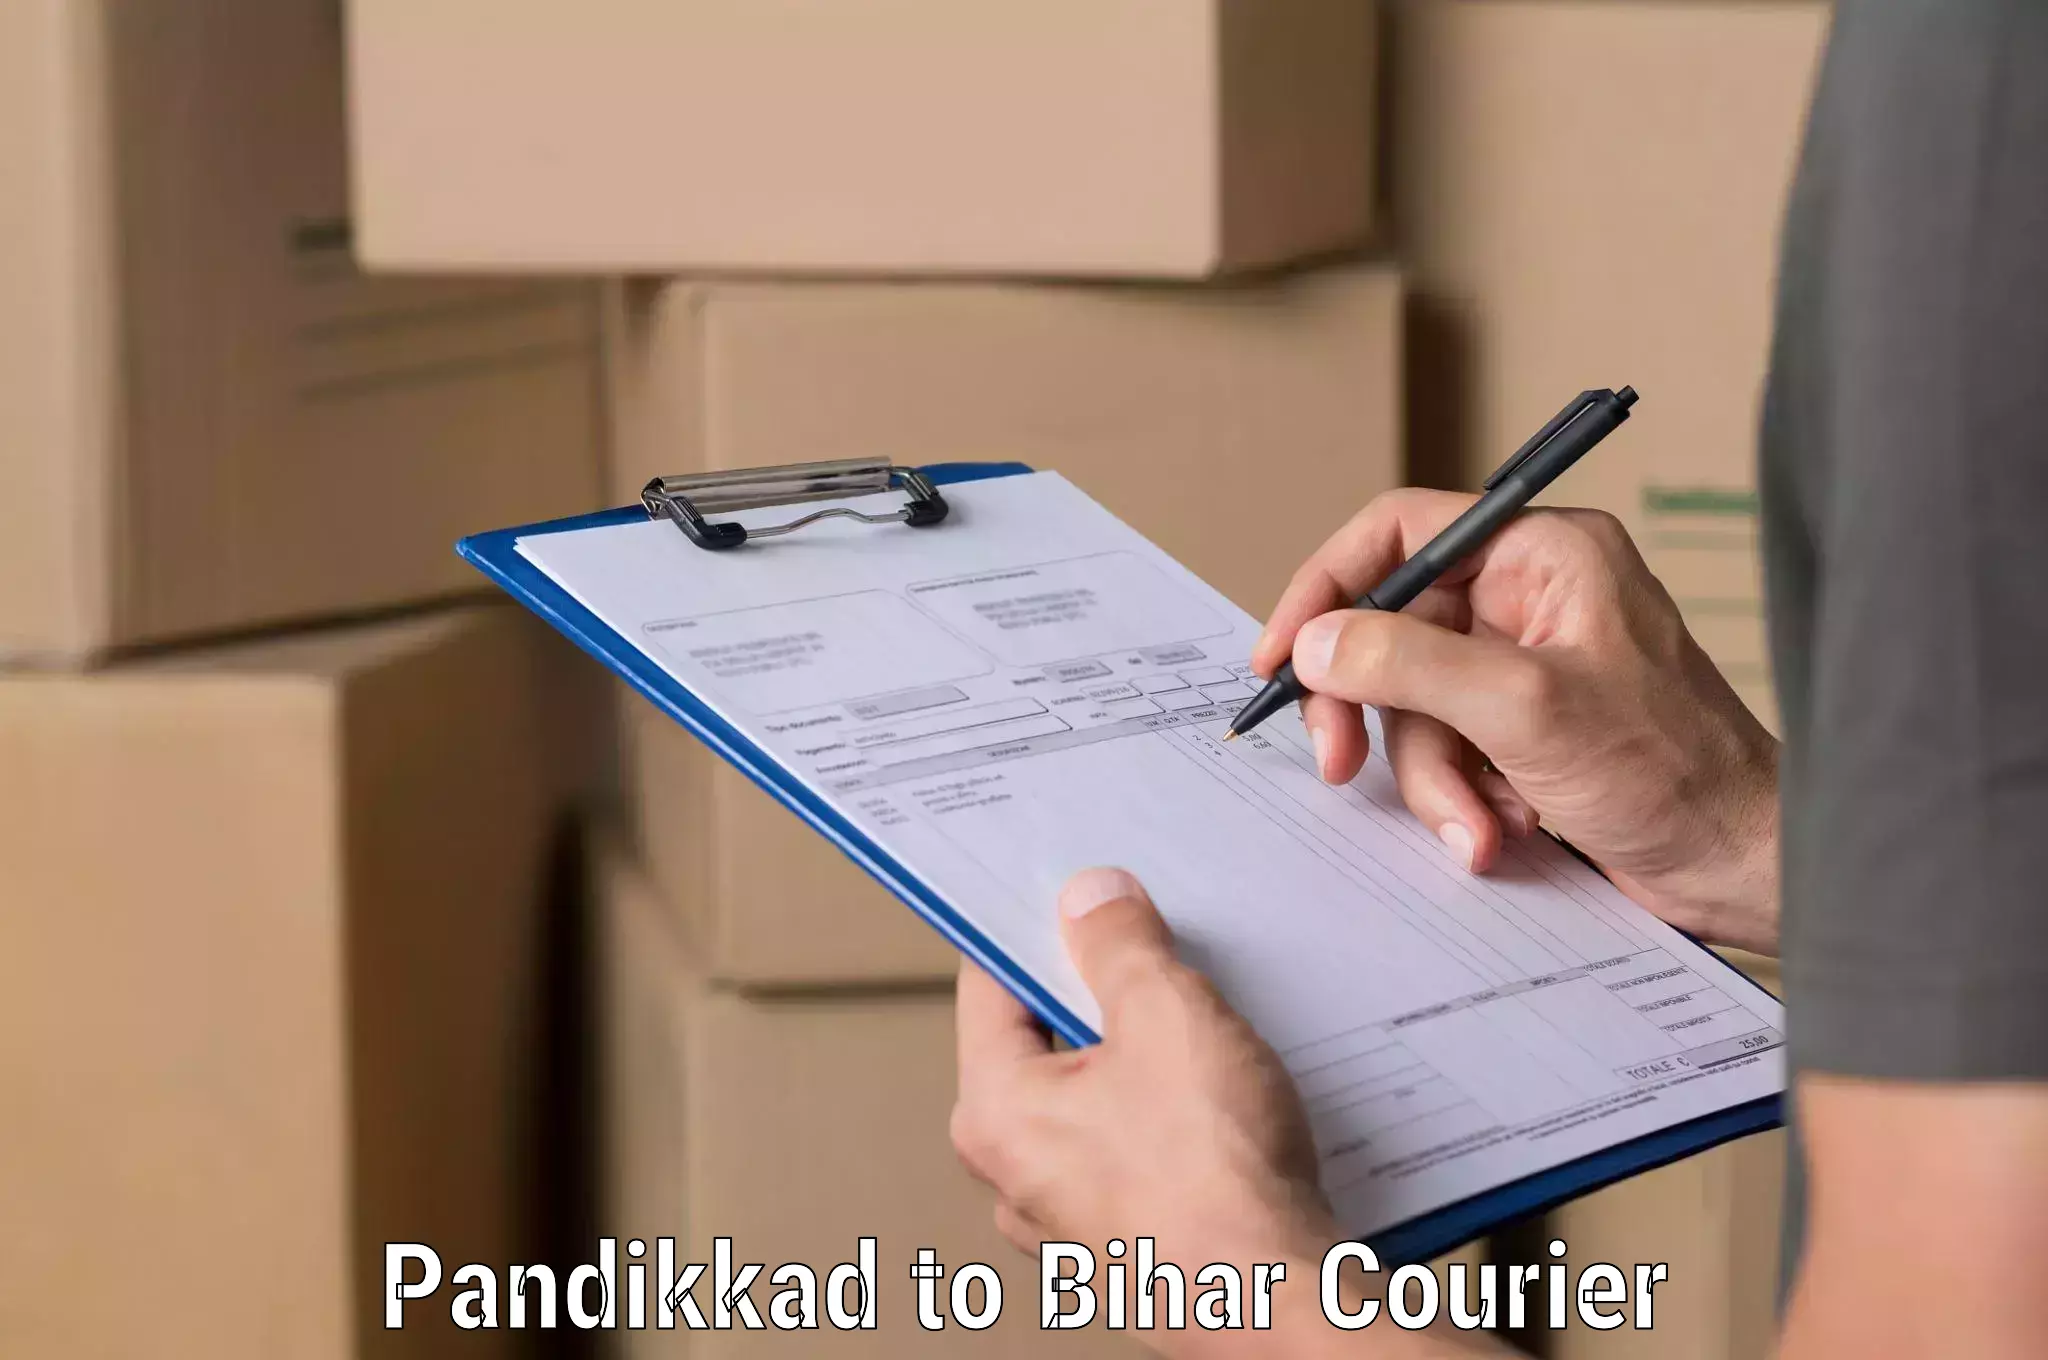 Automated shipping processes Pandikkad to Bakhri